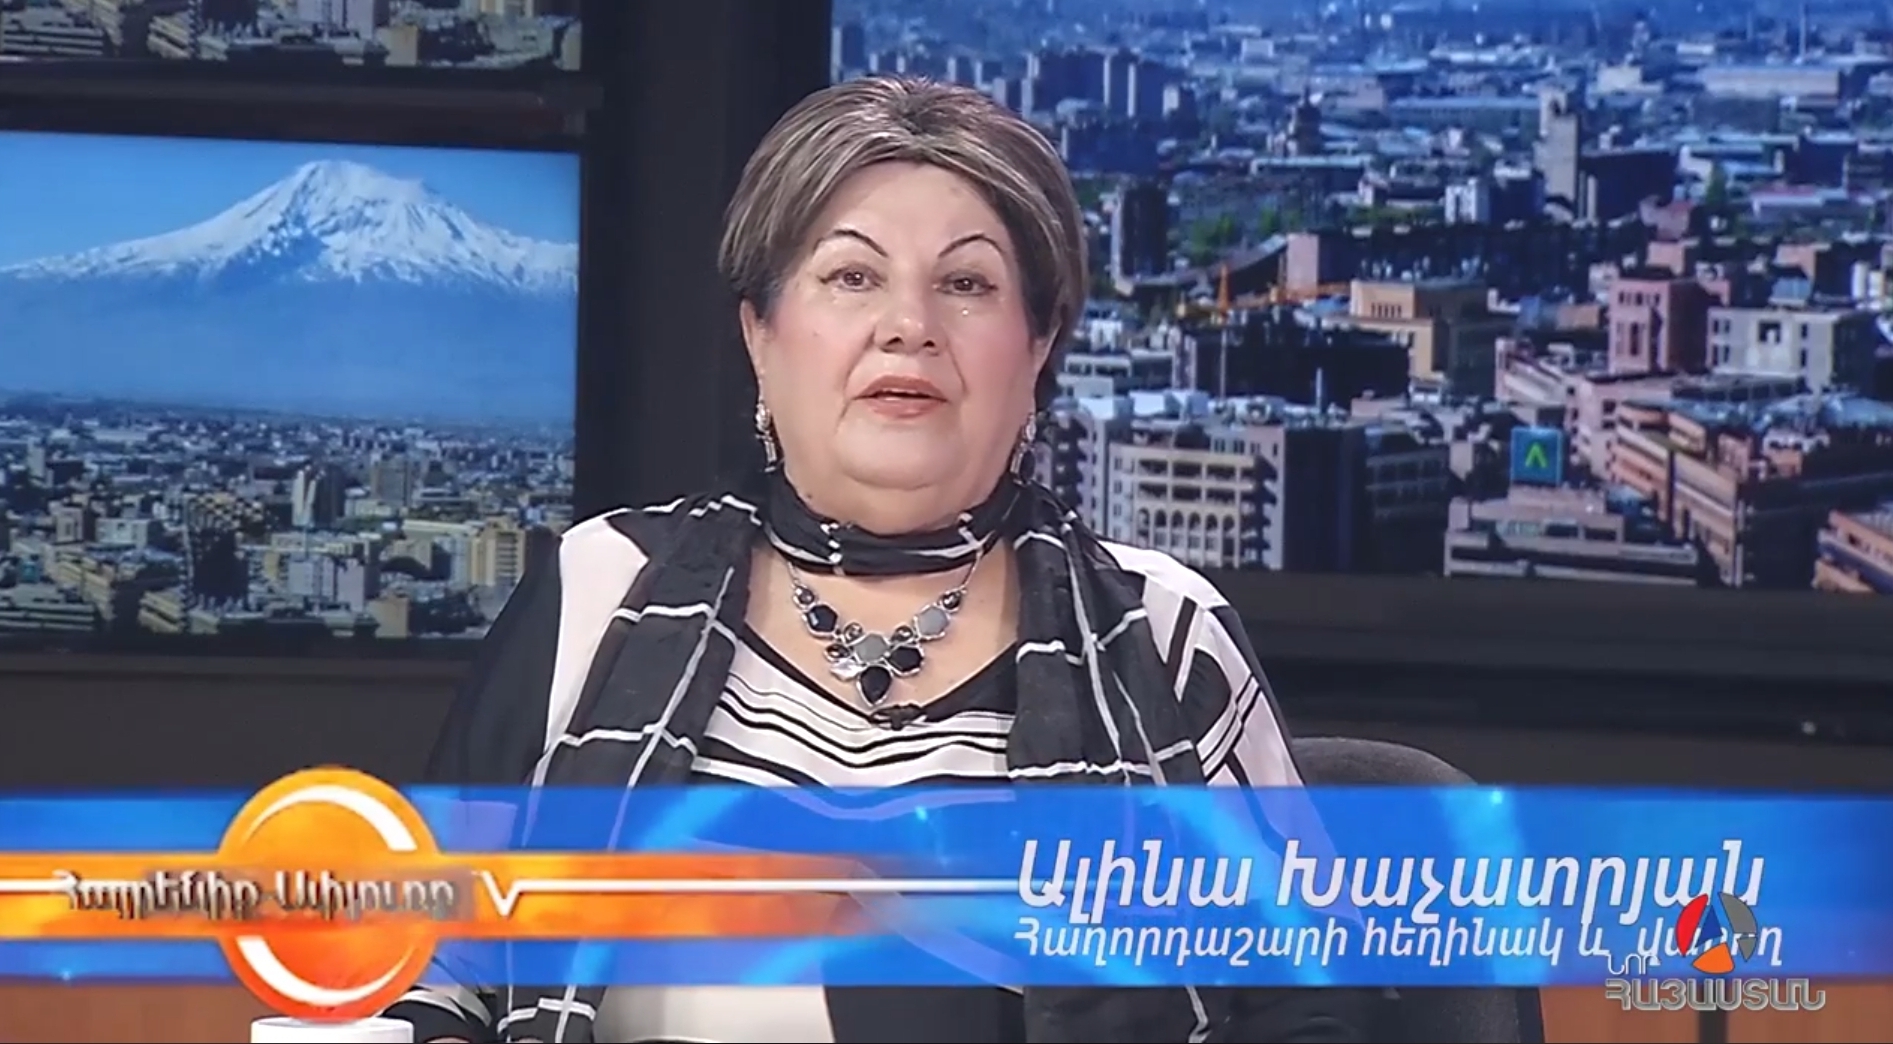 Նոր հայաստան և US Armenia TV հեռուստաընկերություններով հեռարձակվող Հայրենիք֊Սփյուռք ամենաերկարակյաց հաղորդաշարի հեղինակ֊վարող Ալինա Խաչատրյանը մրցանակի է արժանացել։